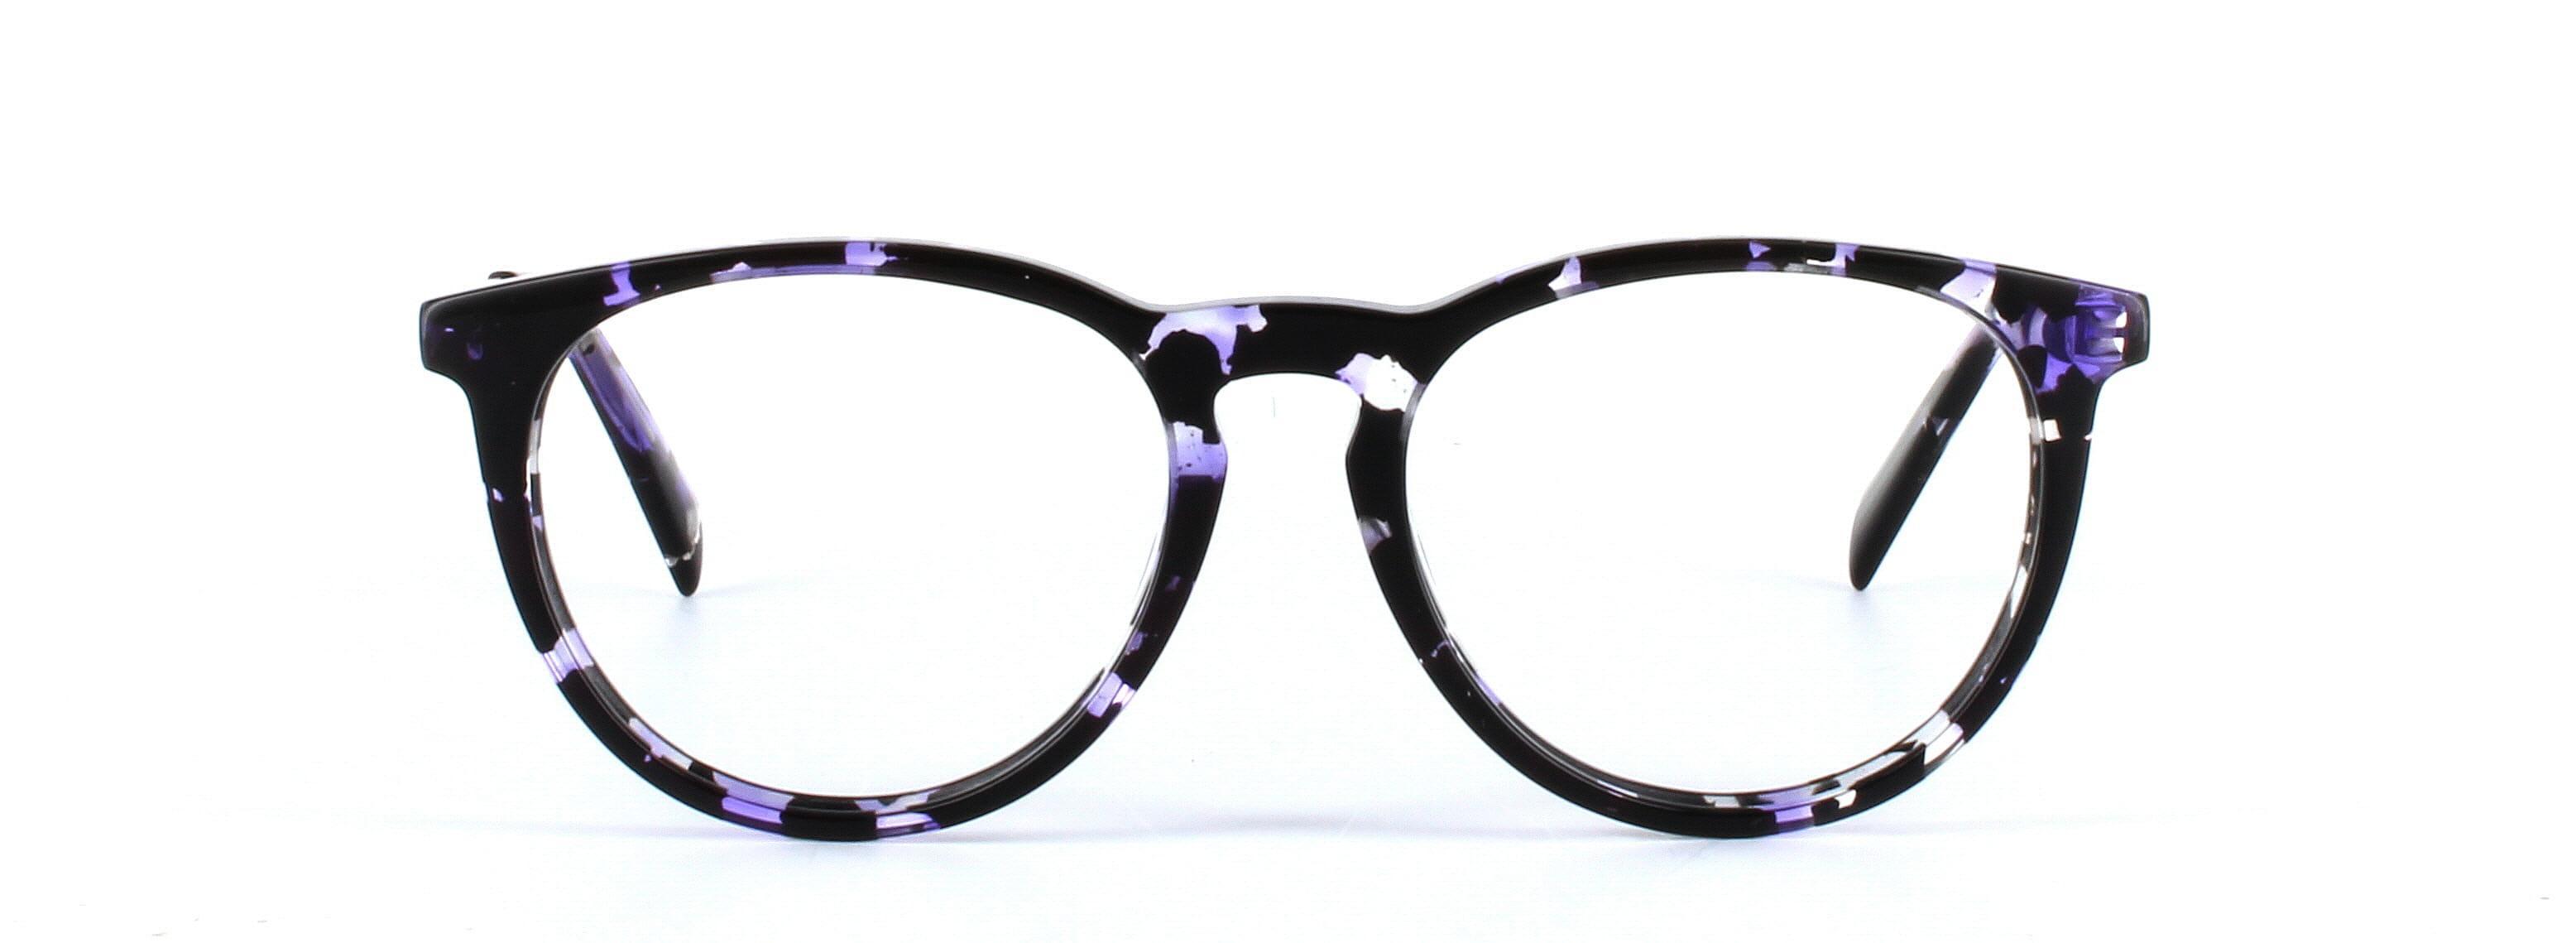 JUST CAVALLI (JC0879-055) Black and Purple Full Rim Round Acetate Glasses - Image View 5